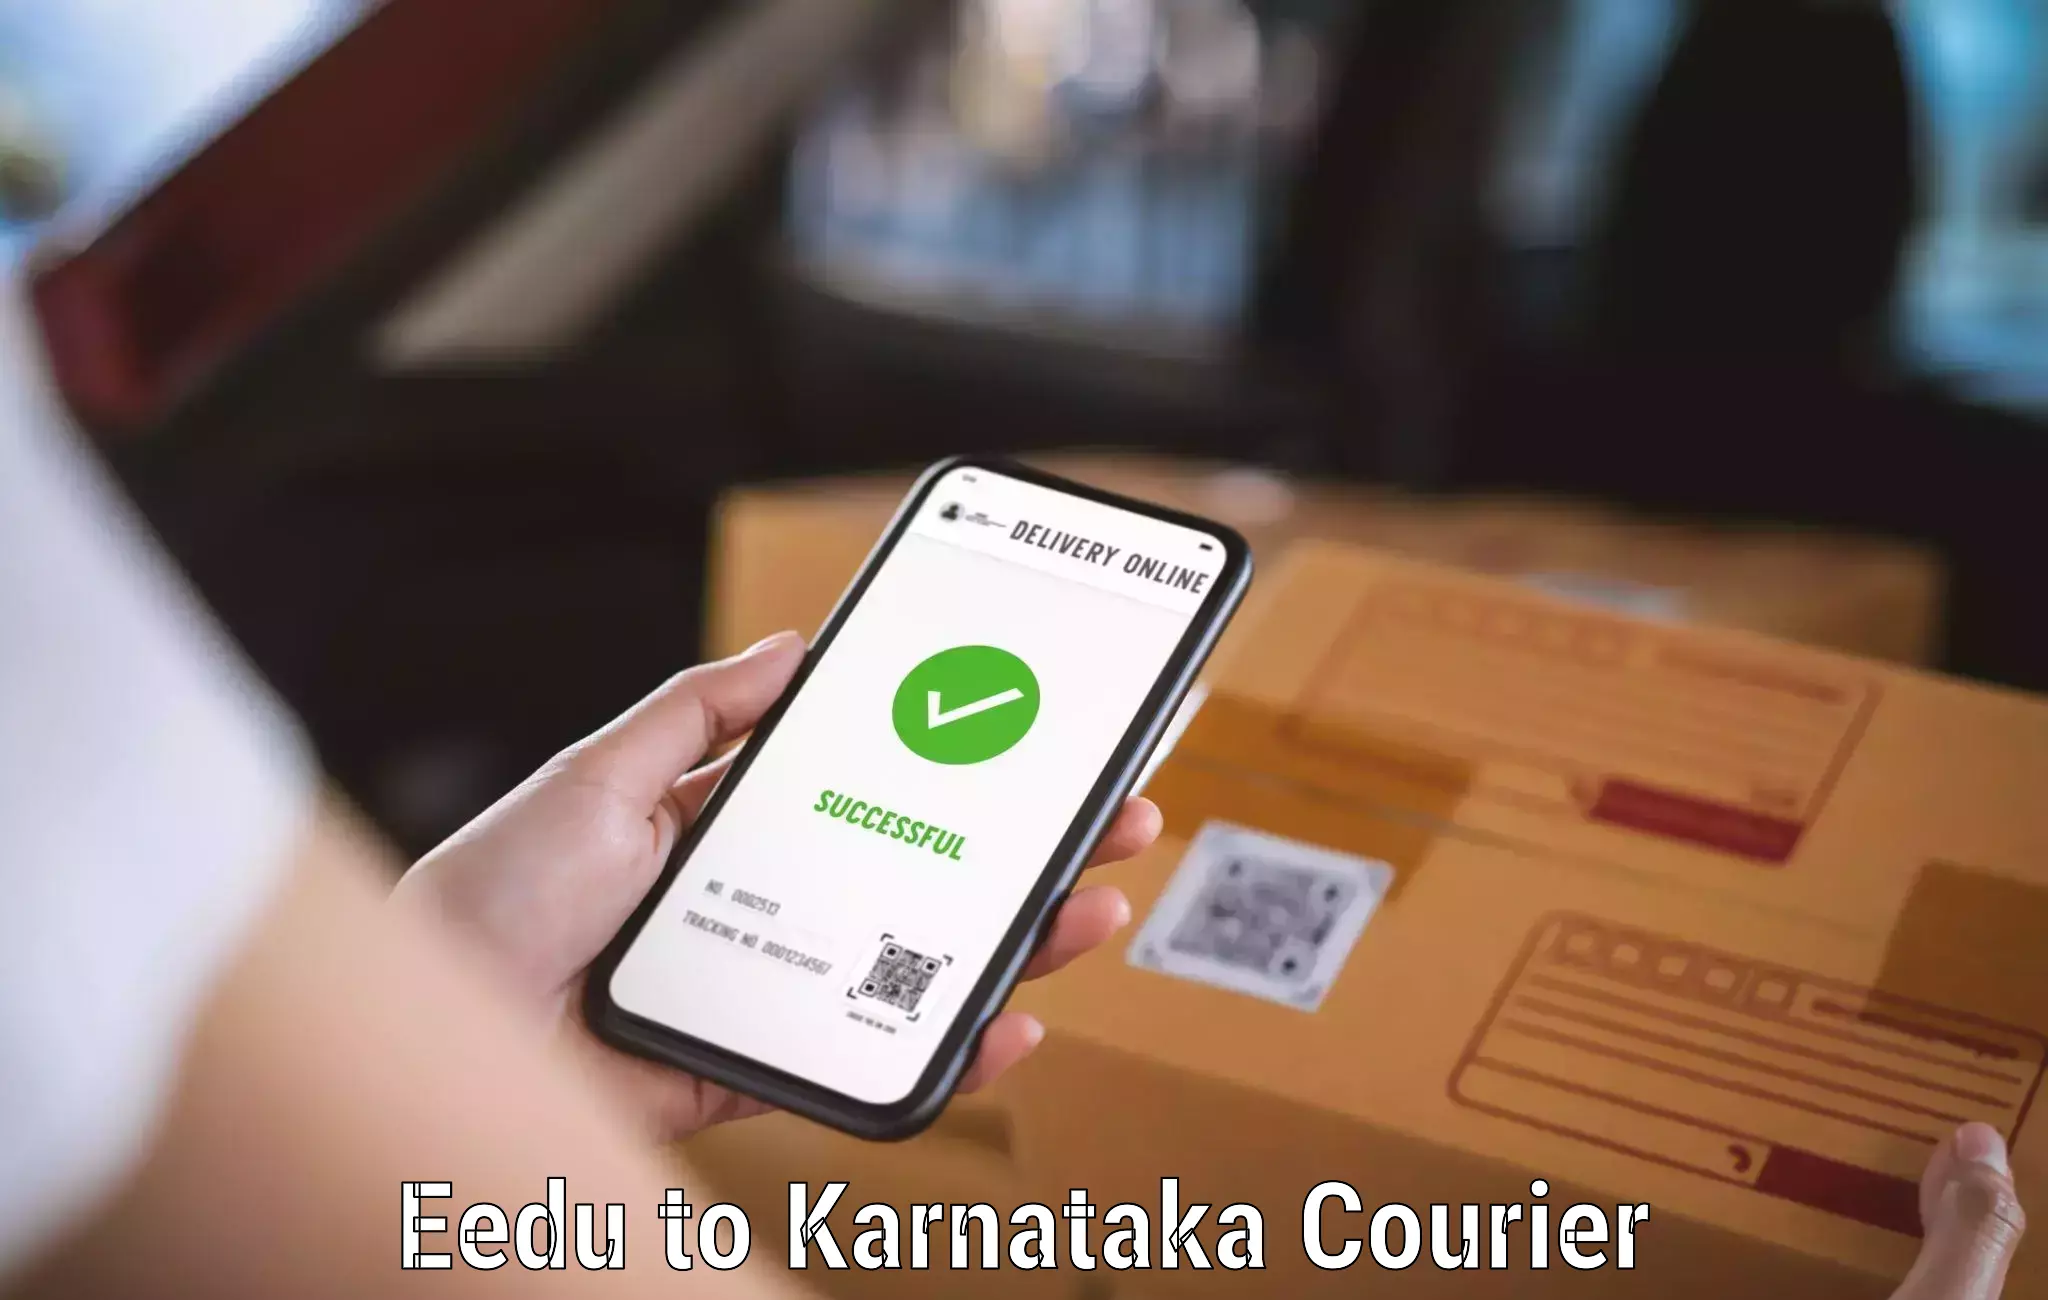 Door-to-door freight service Eedu to Karnataka